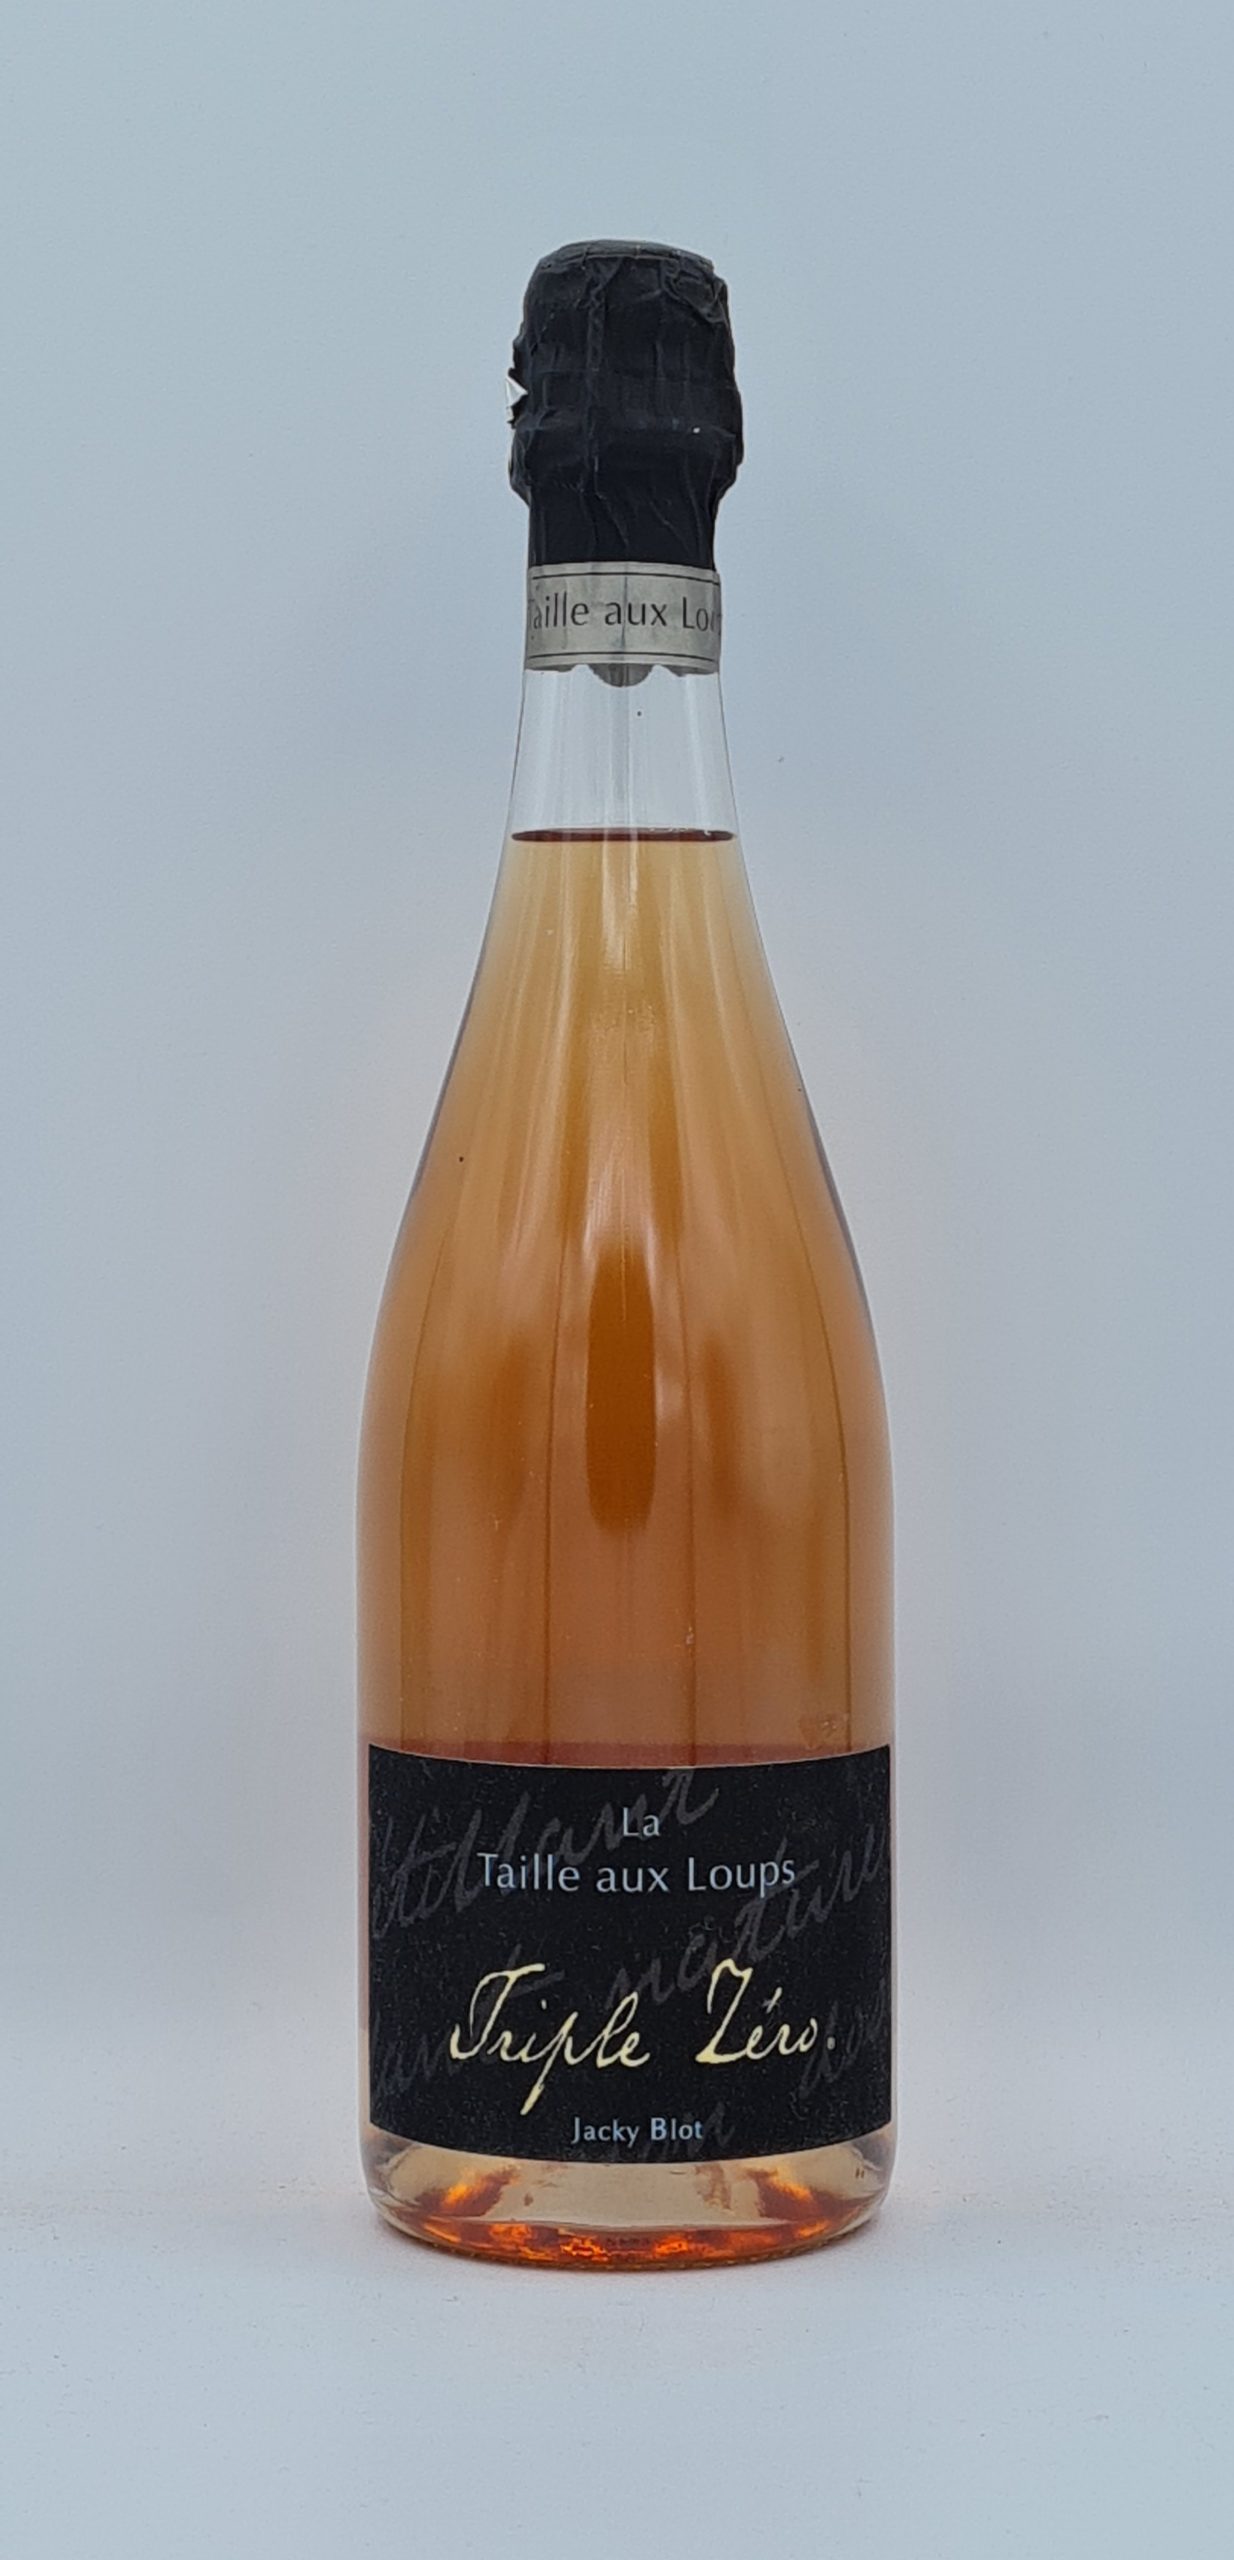 Méthode traditionnelle de Loire triple zéro rosé La Taille aux Loups